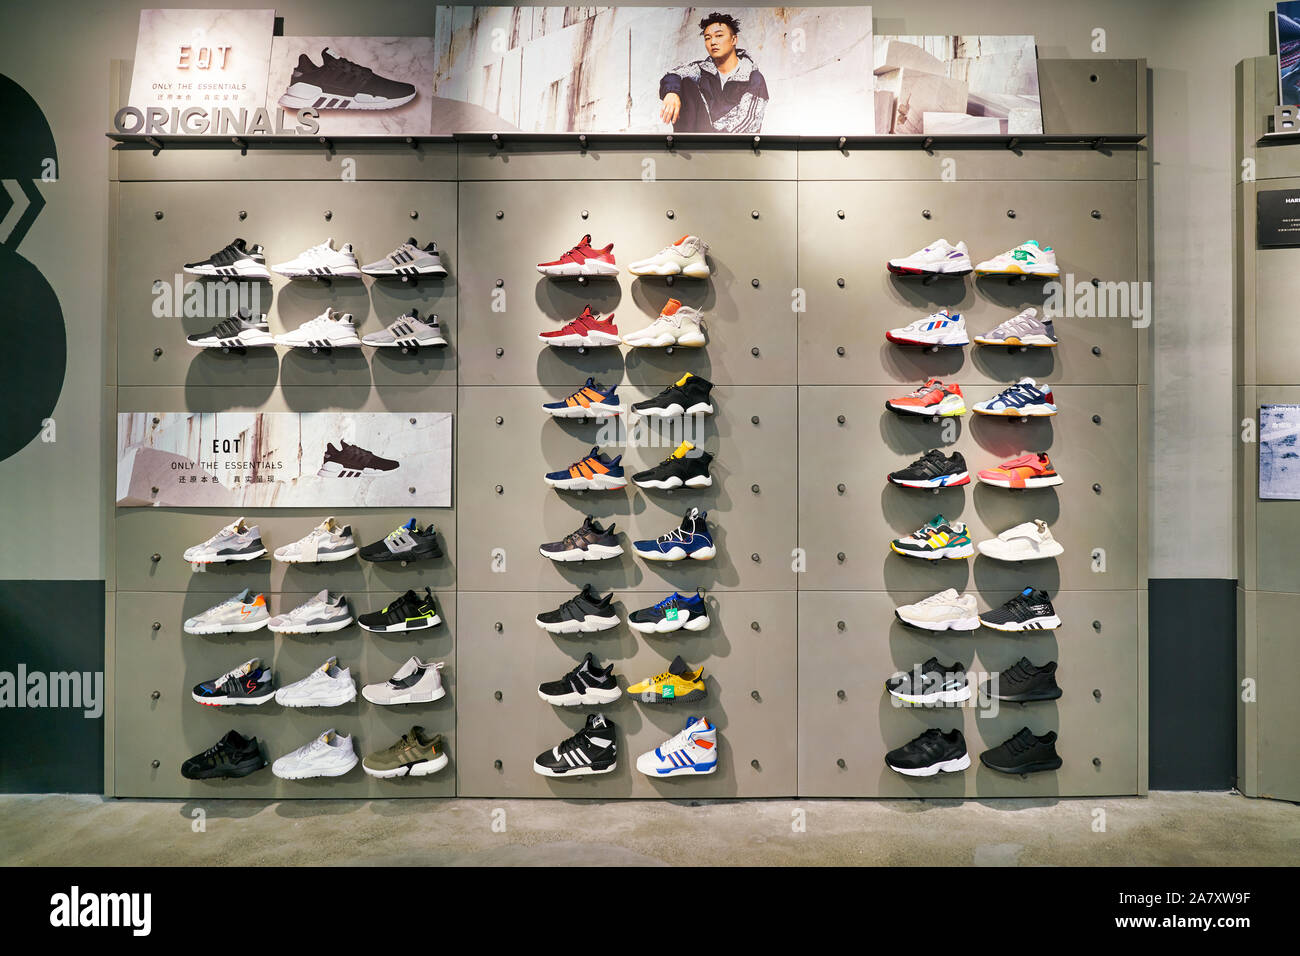 adidas showroom